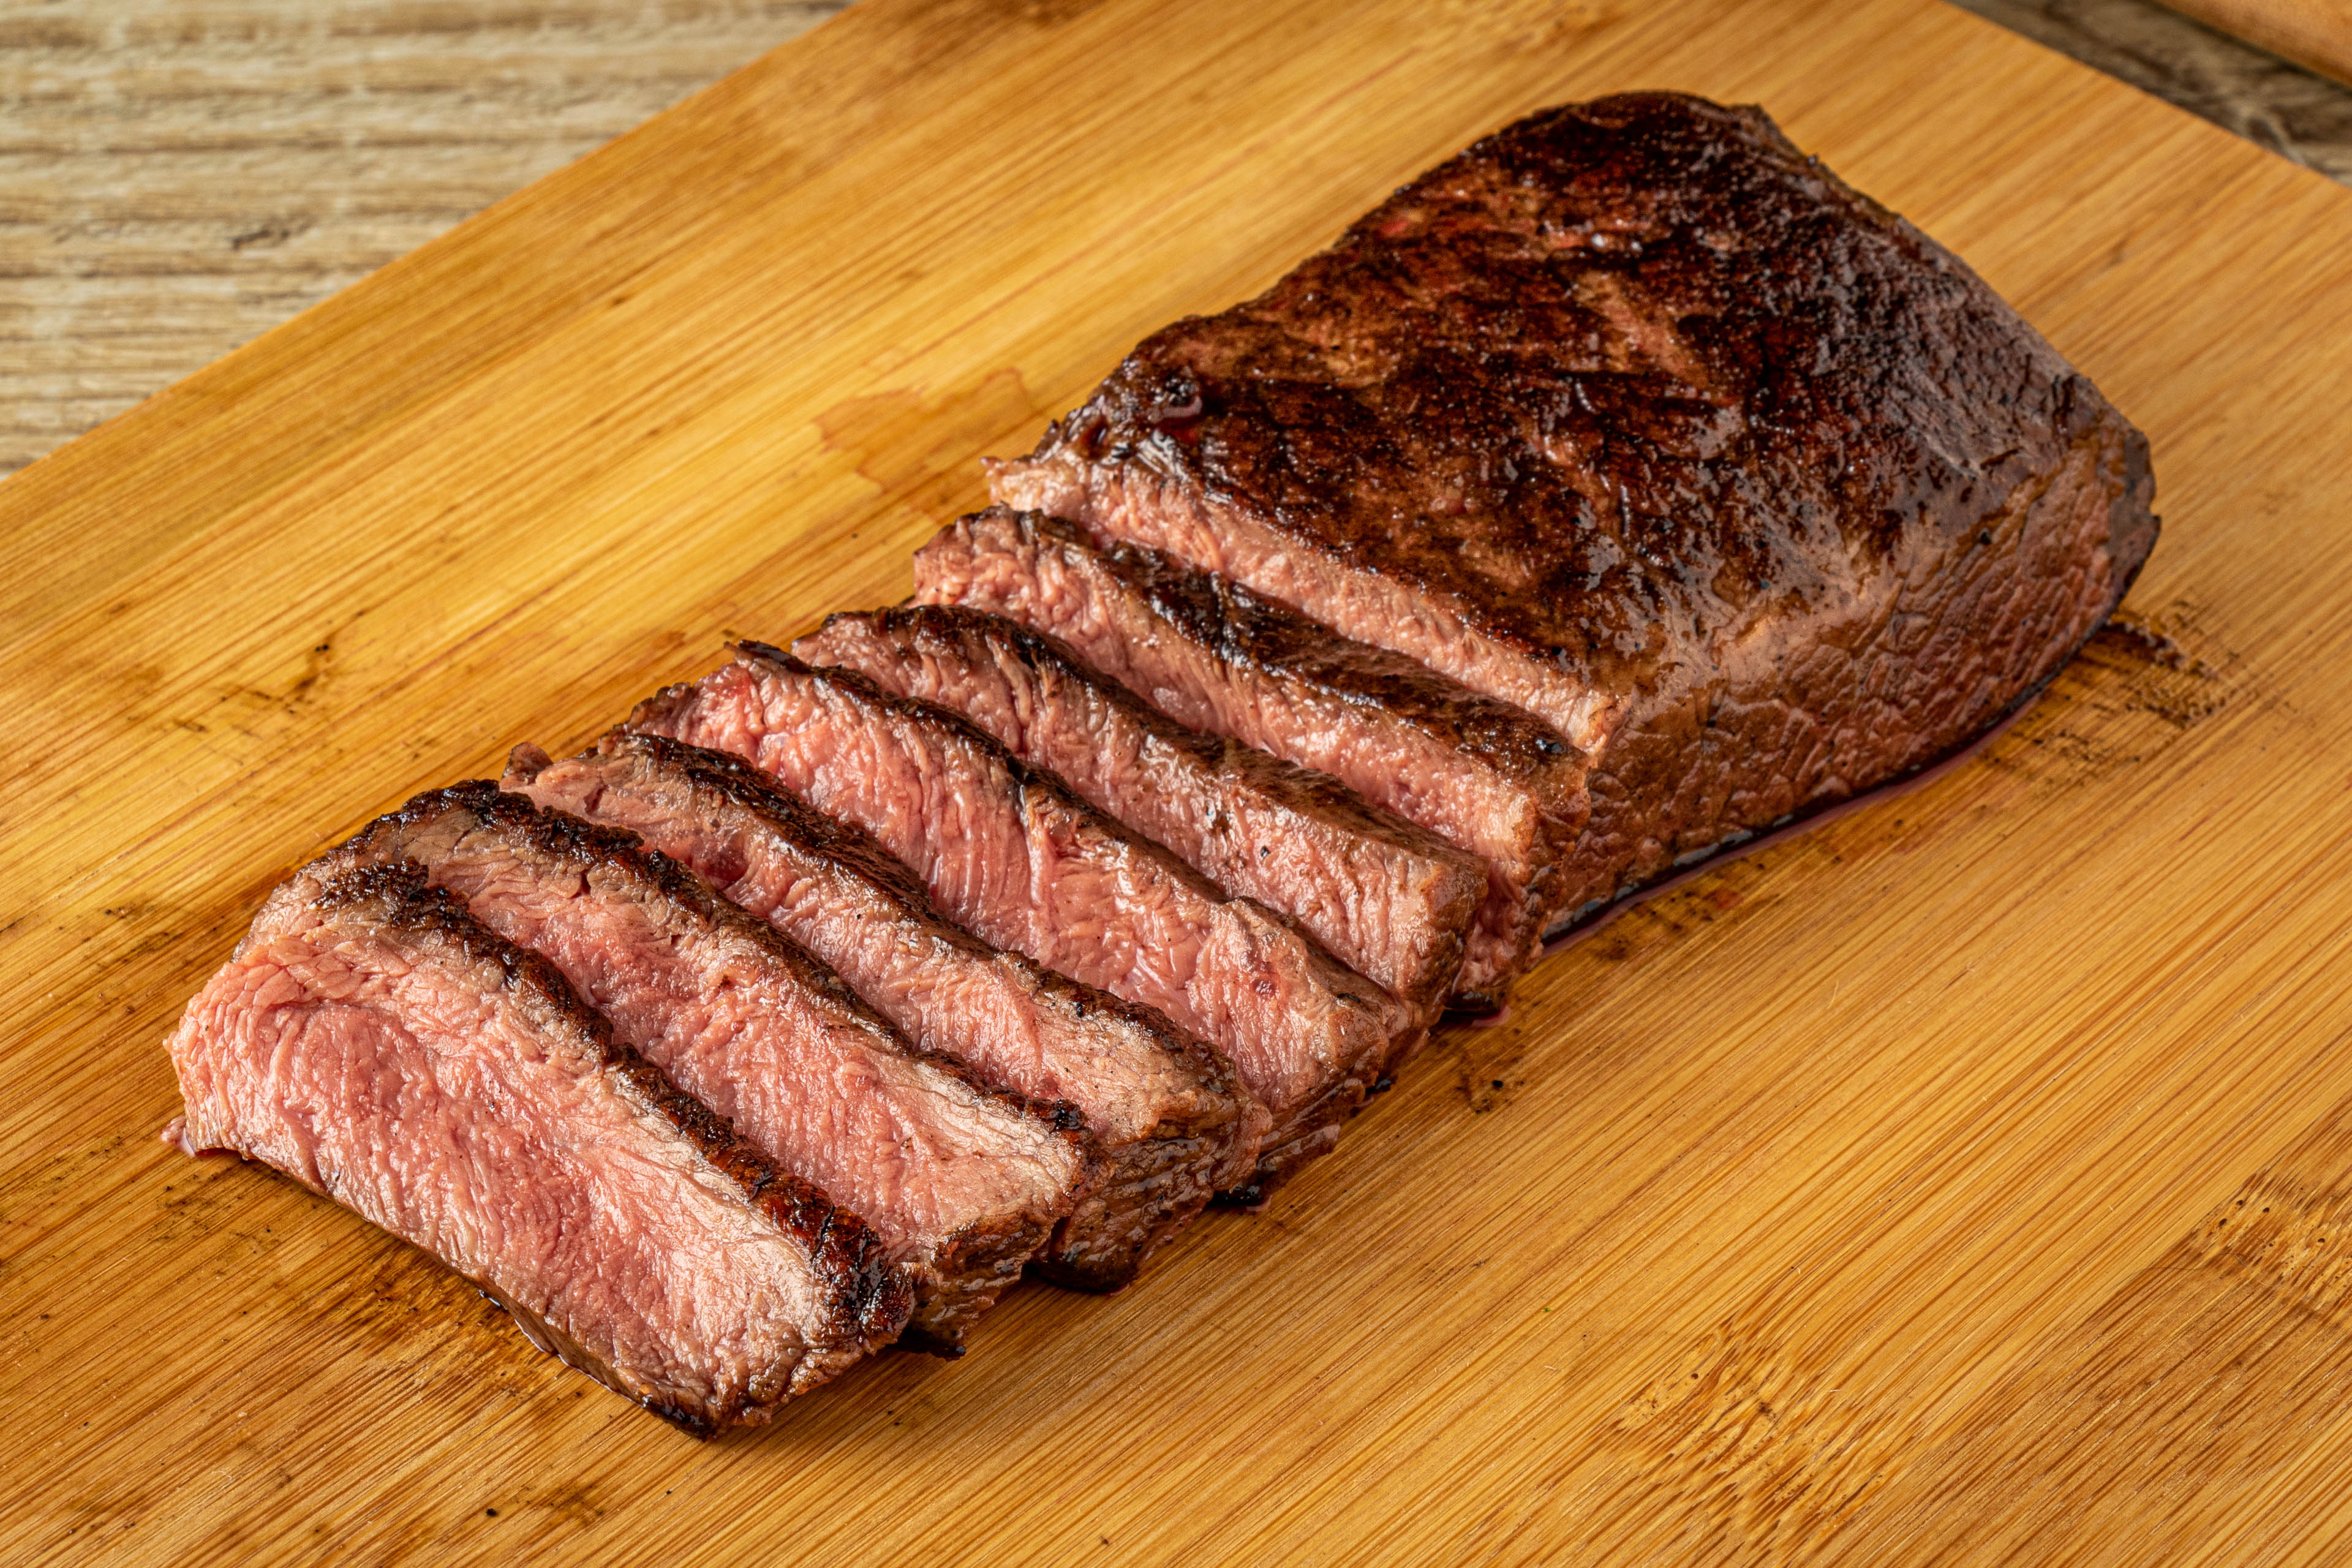 flat iron steak nutrition